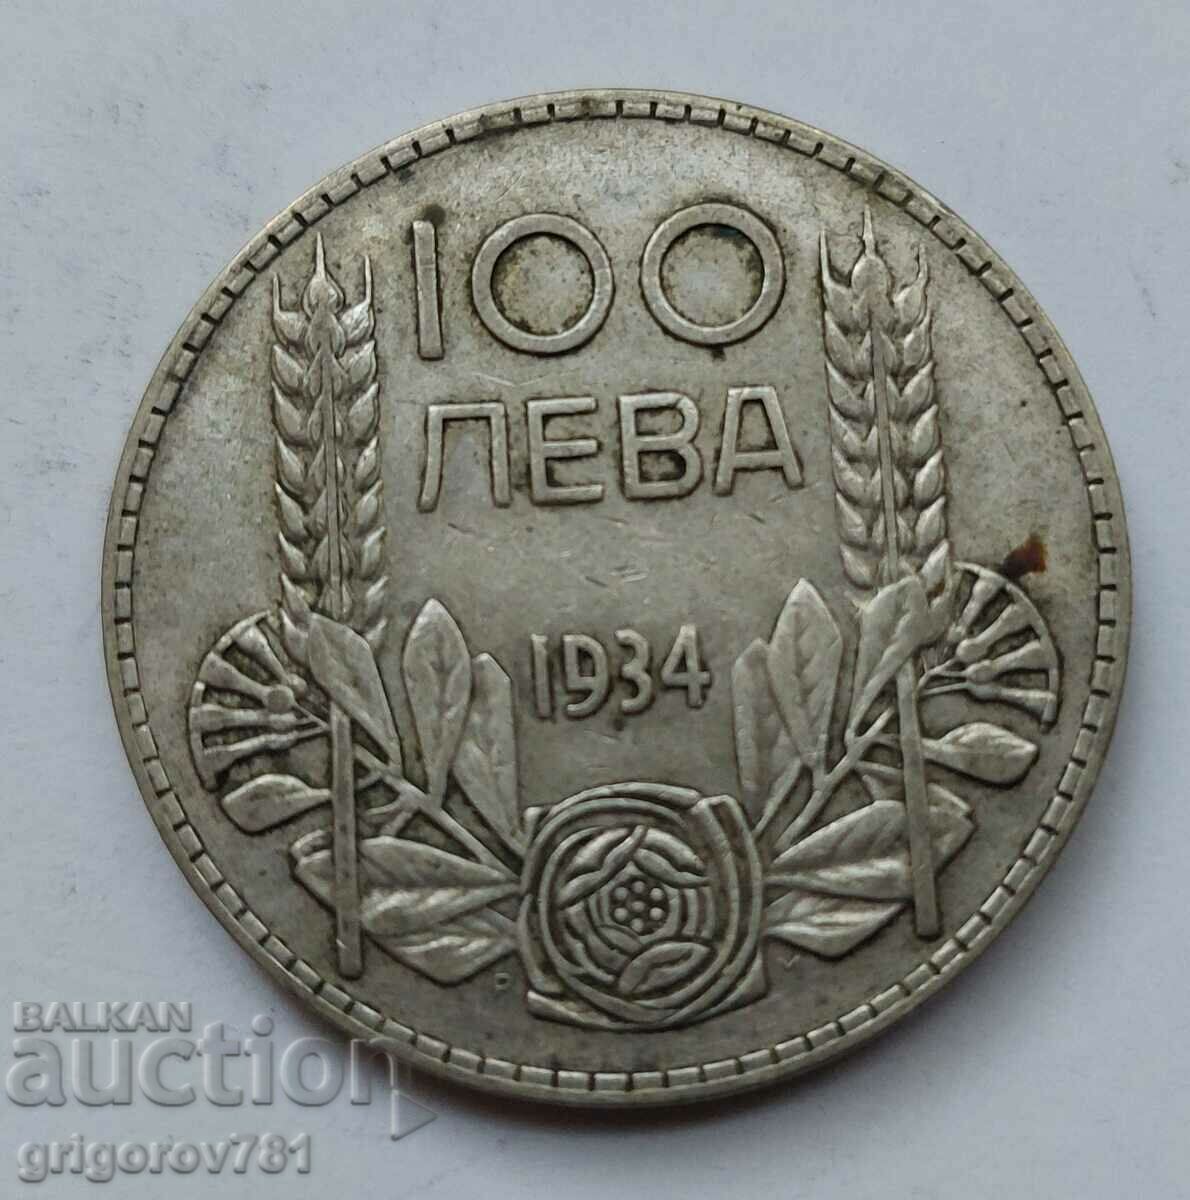 100 leva argint Bulgaria 1934 - monedă de argint #69